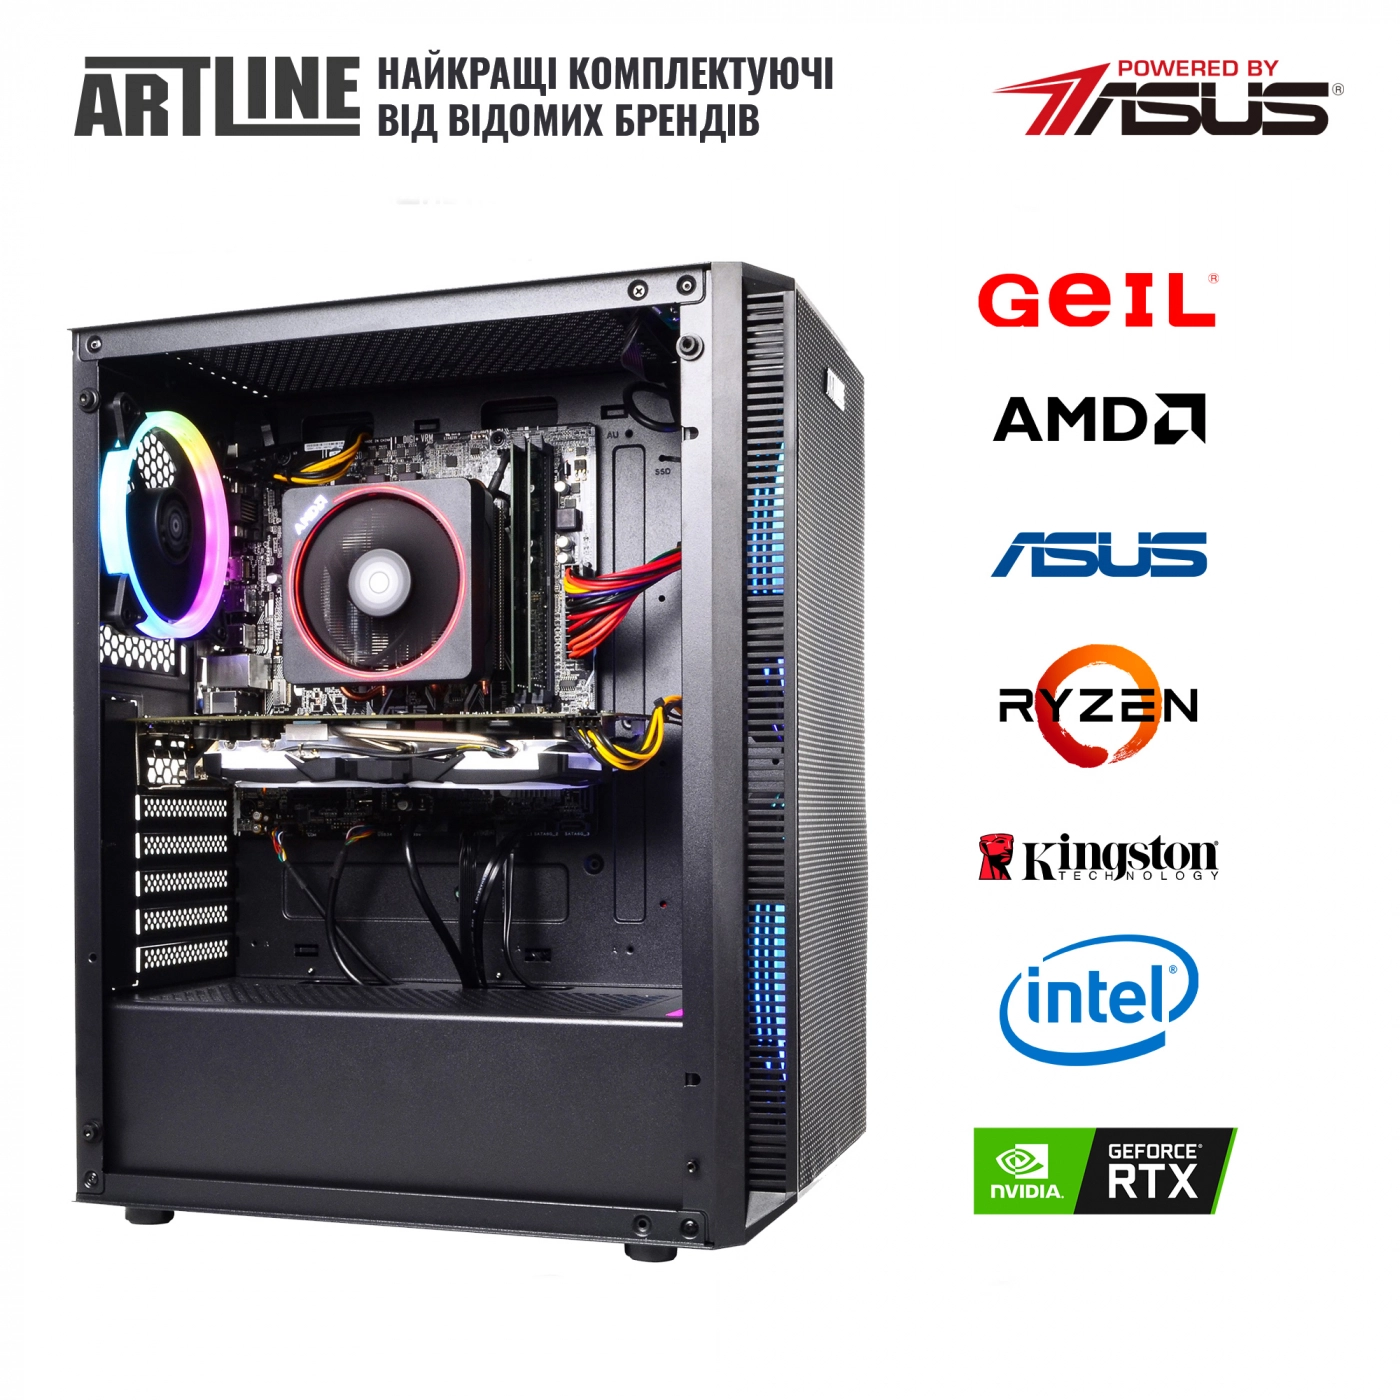 Купить Компьютер ARTLINE Gaming X65v30 - фото 6